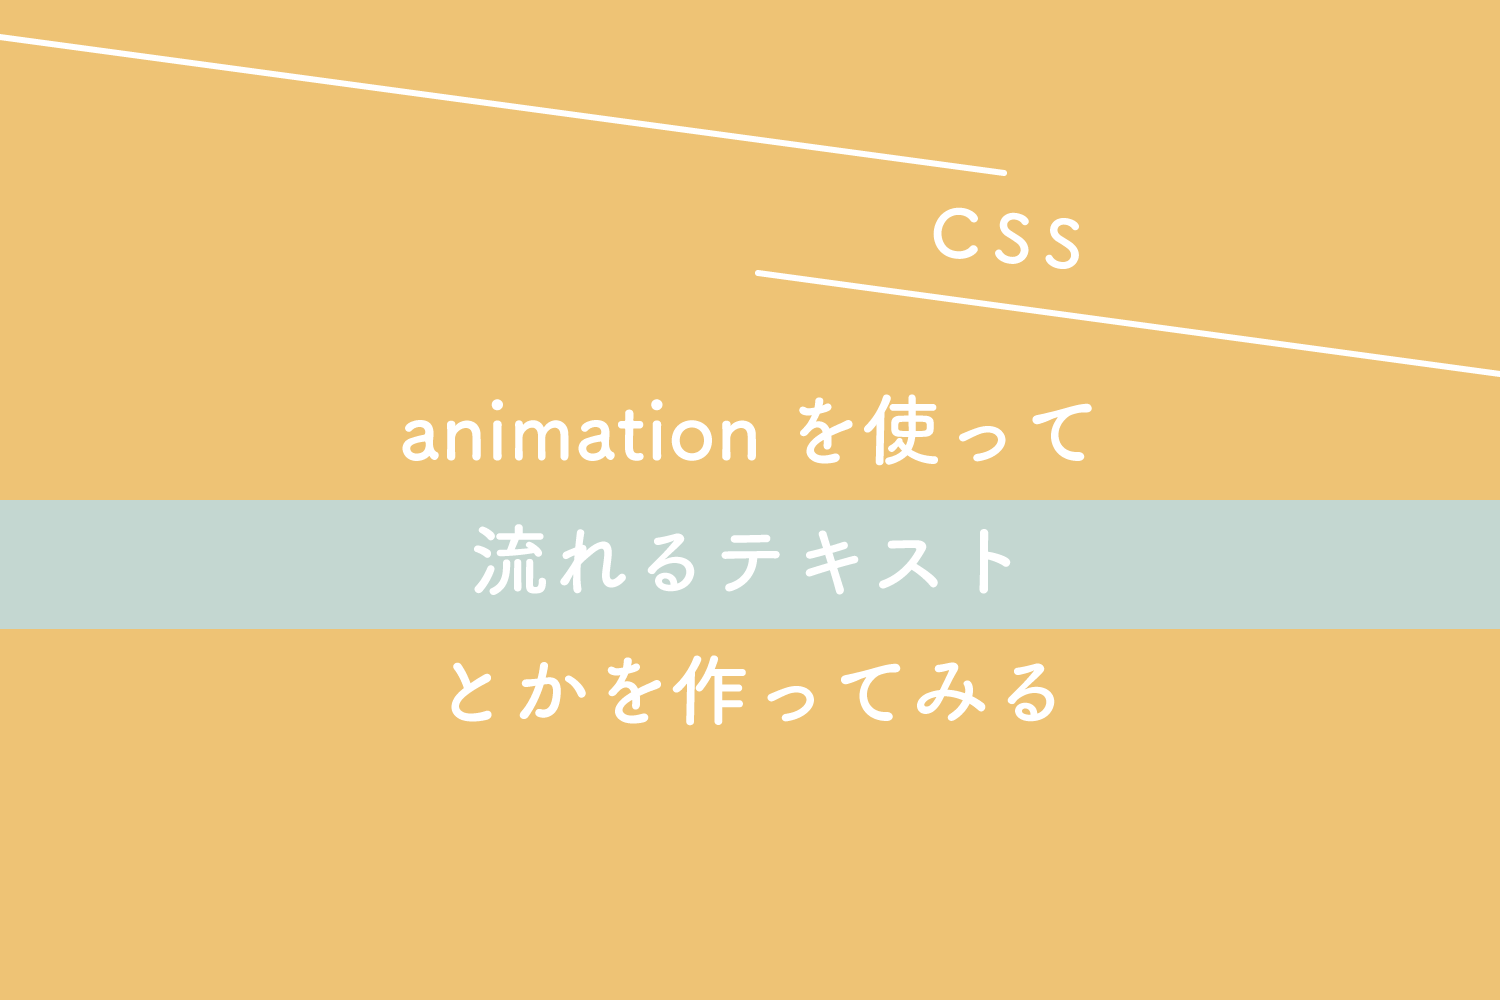 【CSS】animationを使って流れるテキストとかを作ってみる